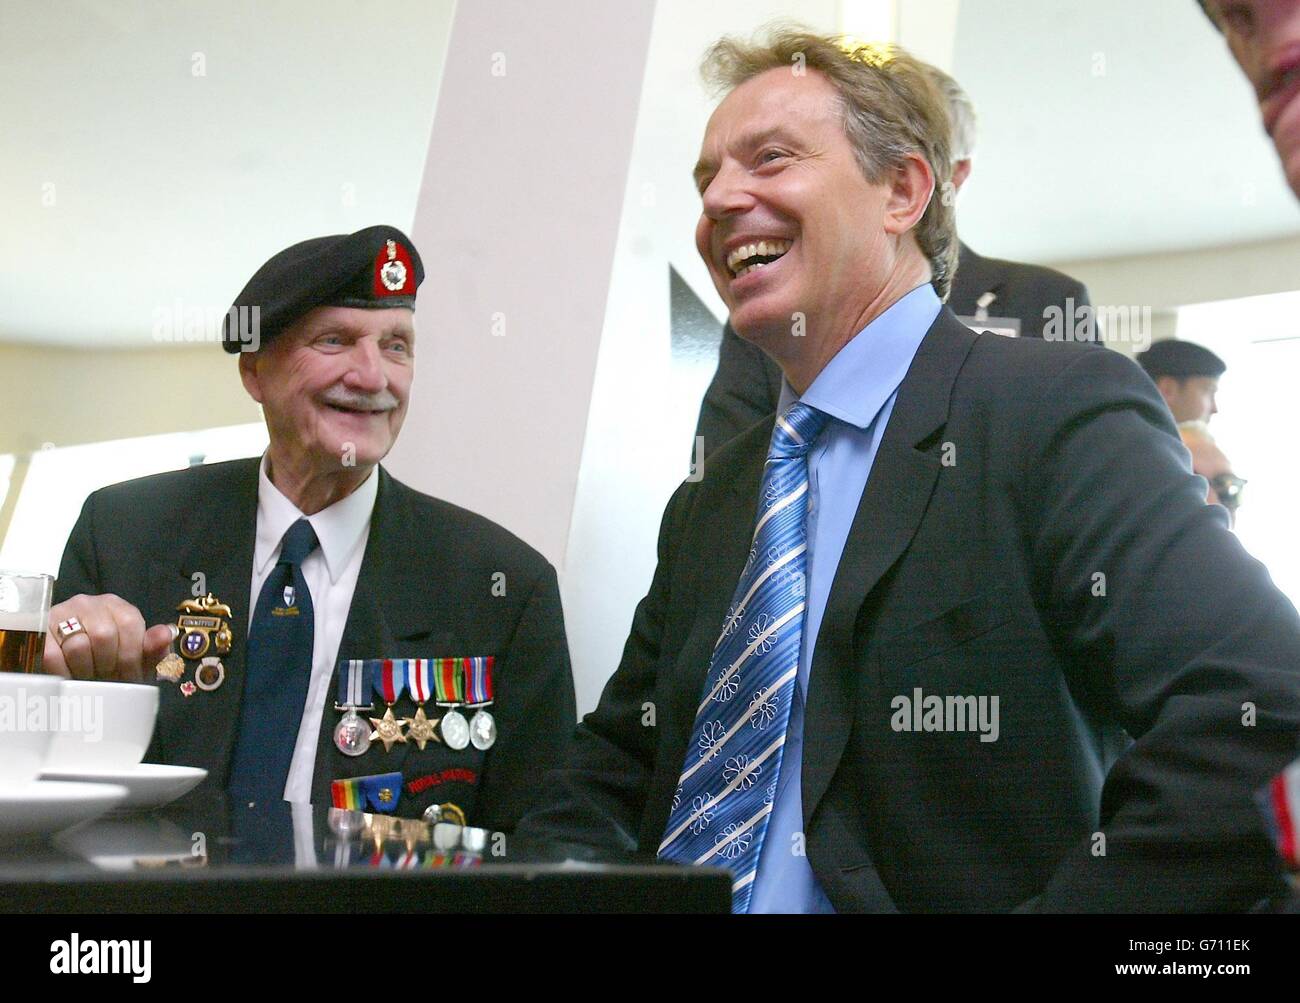 Der britische Premierminister Tony Blair trifft den D-Day-Veteranen Jim Baker DSM im Imperial war Museum North in Salford, Greater Manchester. Blair sagte, der Besuch des Museums, das ein Veranstaltungsprogramm zum Gedenken an den 60. Jahrestag der Landung des D-Day in der Normandie gestartet hat, habe ihn emotional und „inspiriert“ gemacht. Stockfoto